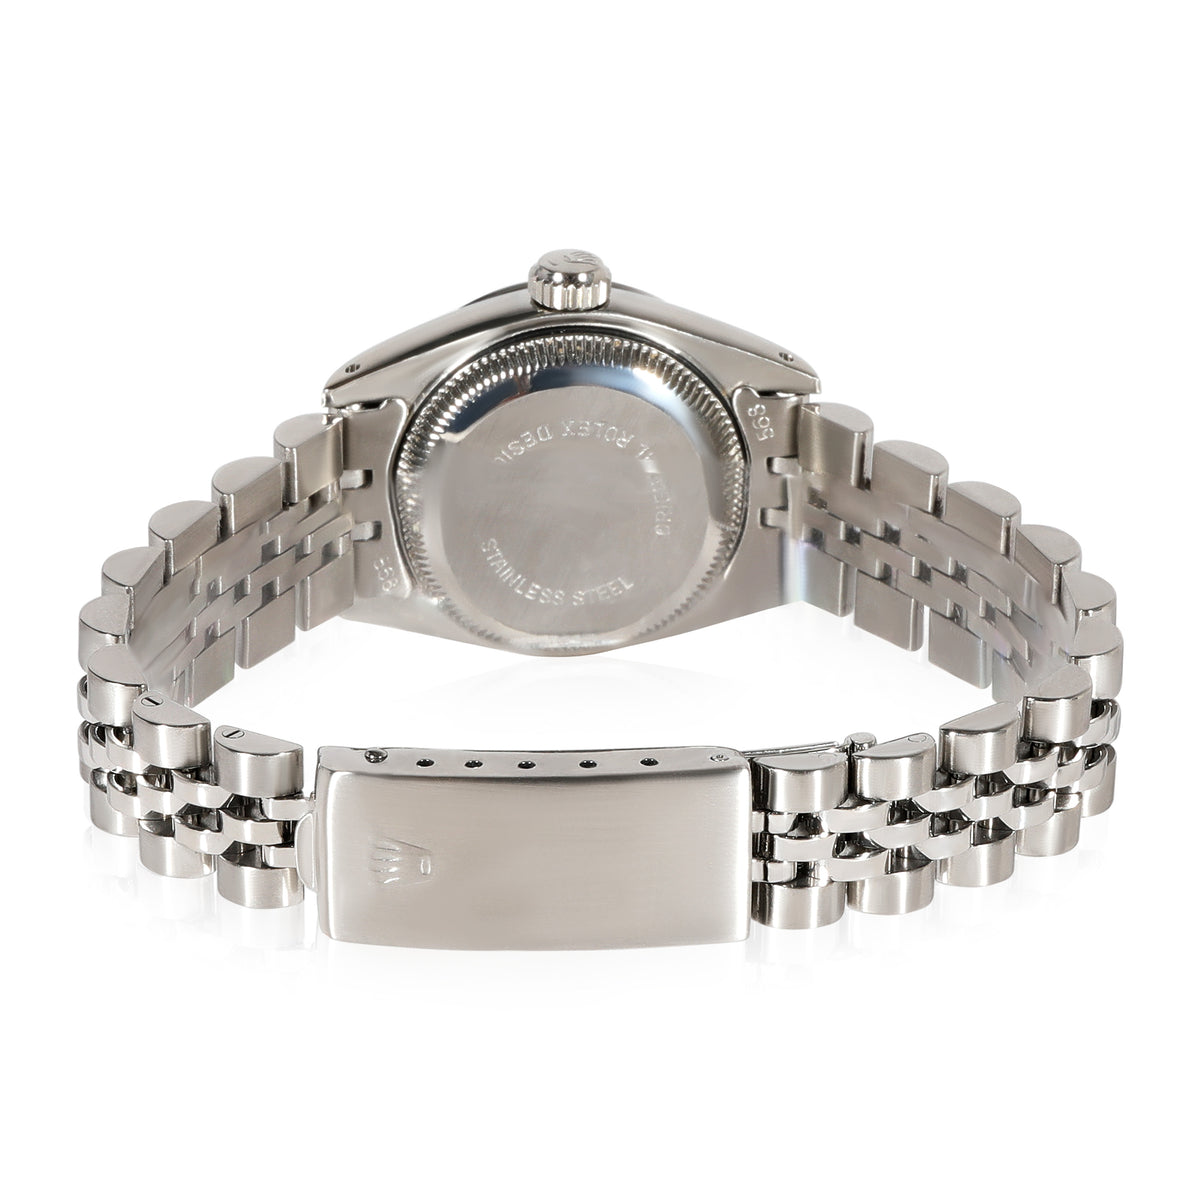 Rolex Date 69160 Women's Watch in  Stainless Steel